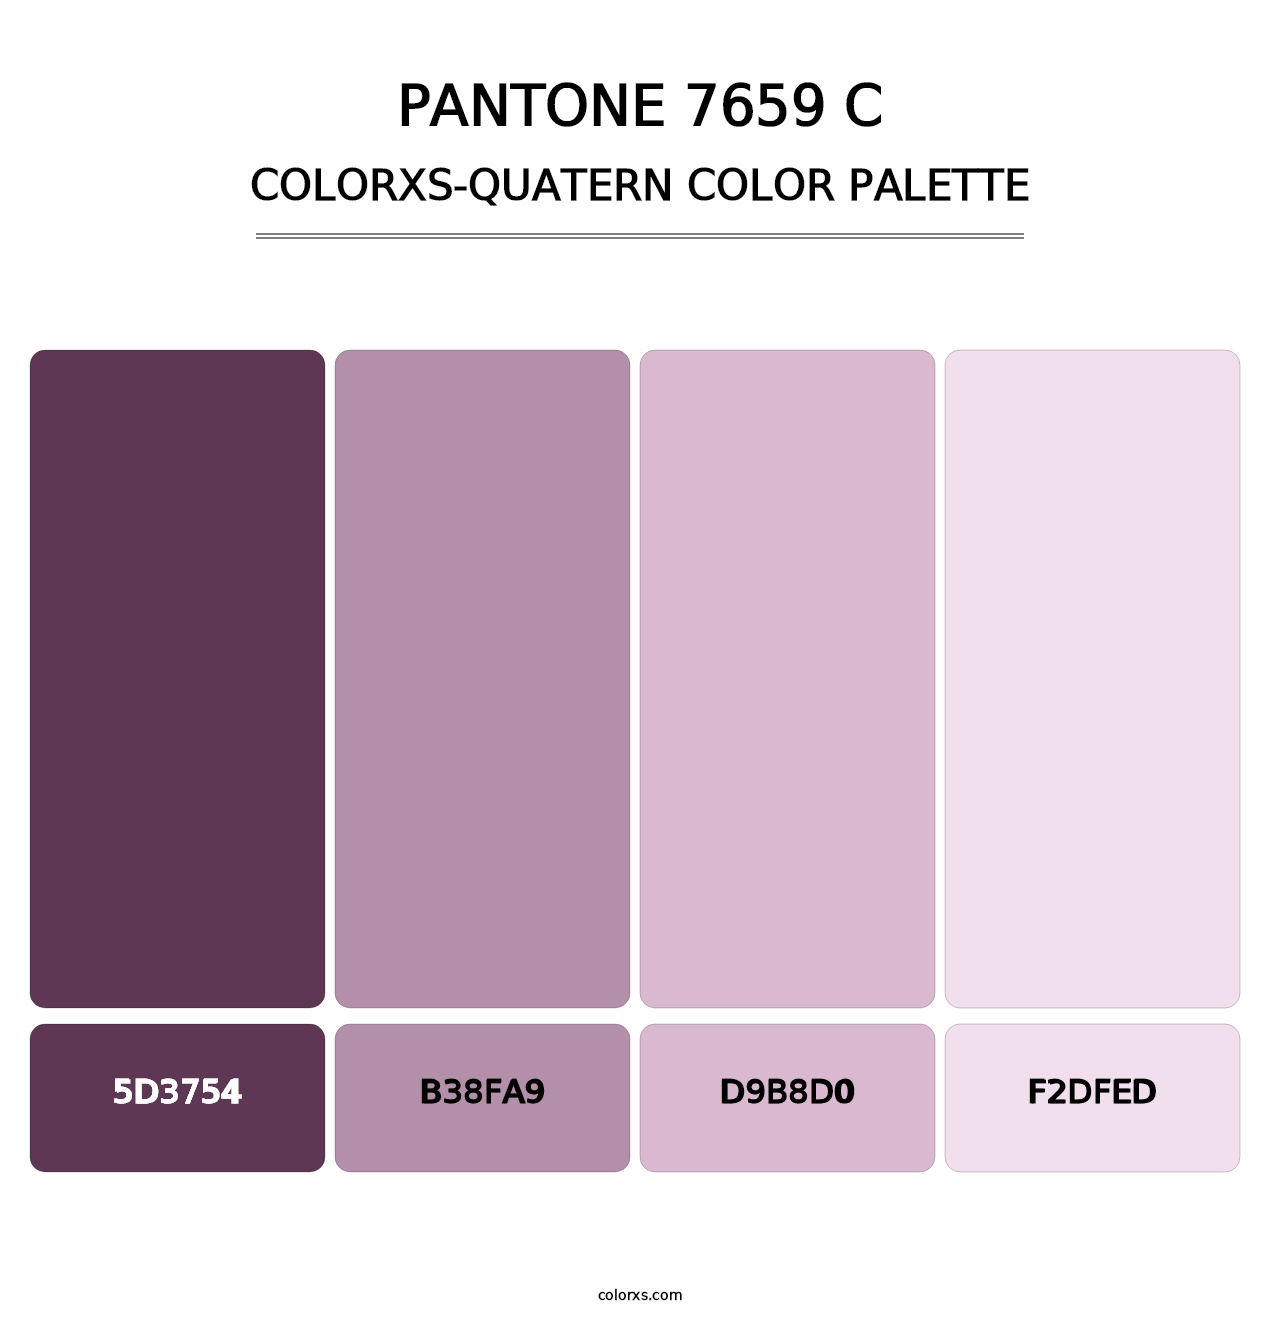 PANTONE 7659 C - Colorxs Quatern Palette